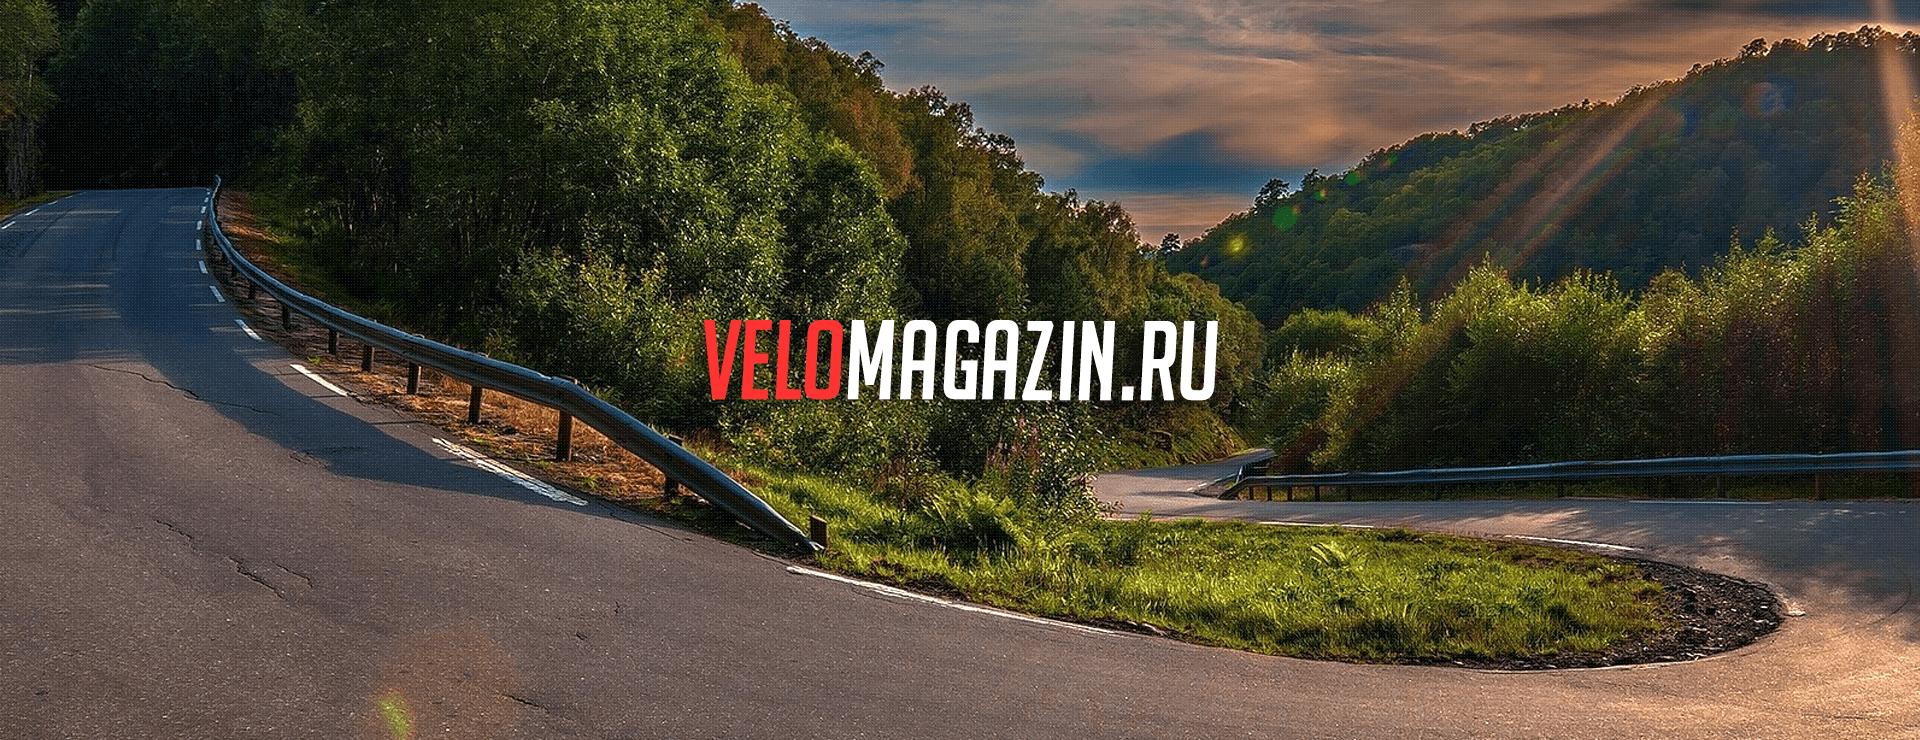 Разработка интернет-магазина велосипедов и аксессуаров «Velomagazin.ru»